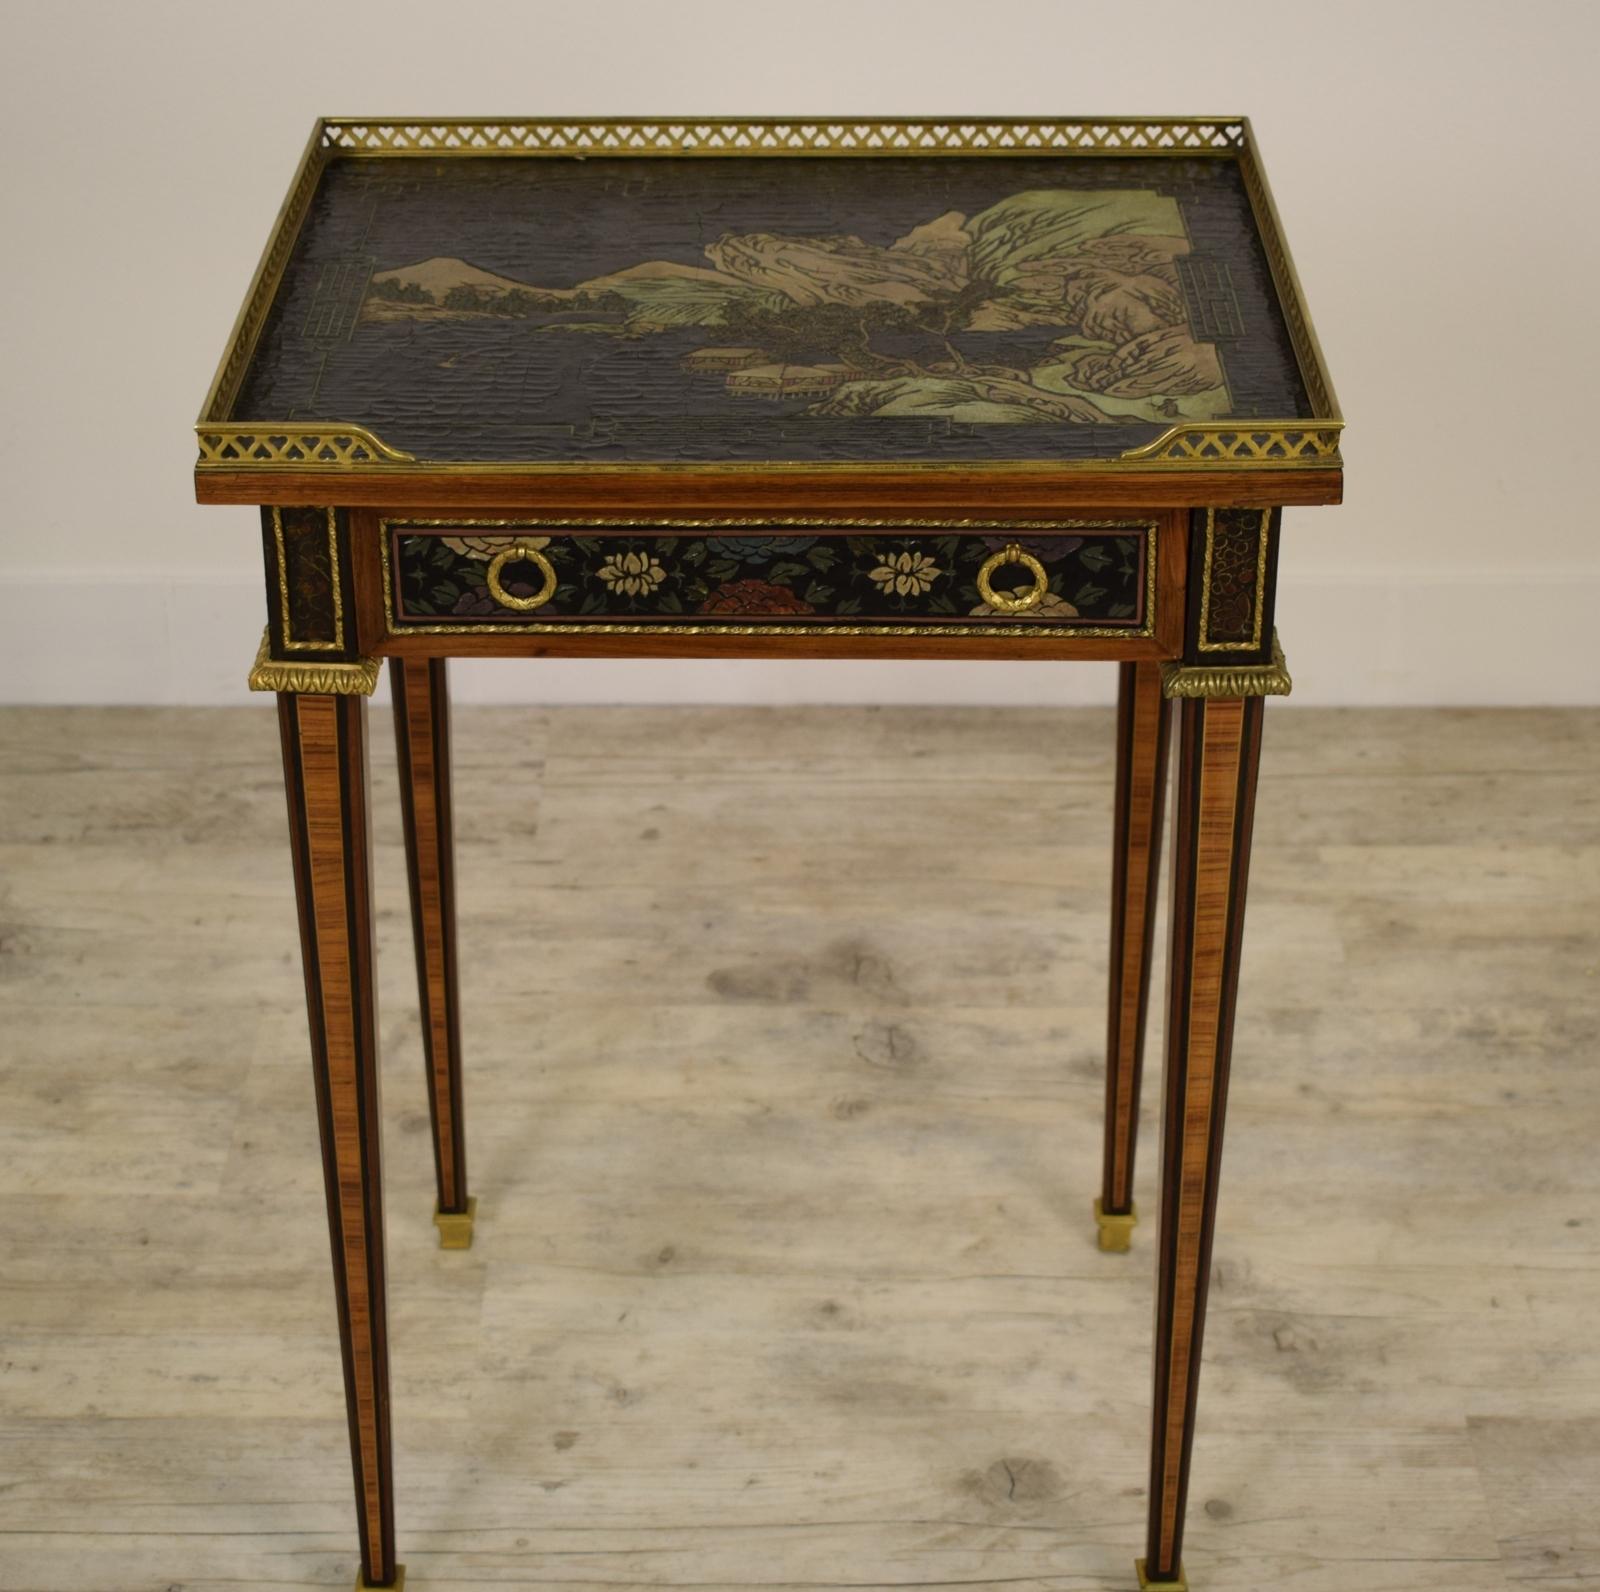 Der Tisch wurde in der zweiten Hälfte des 19. Jahrhunderts in Frankreich im Stil Louis XVI hergestellt. Die Holzstruktur ist vollständig furniert und die Platte sowie die Leiste unter der mittleren und seitlichen Platte sind mit Chinoiserie-Motiven